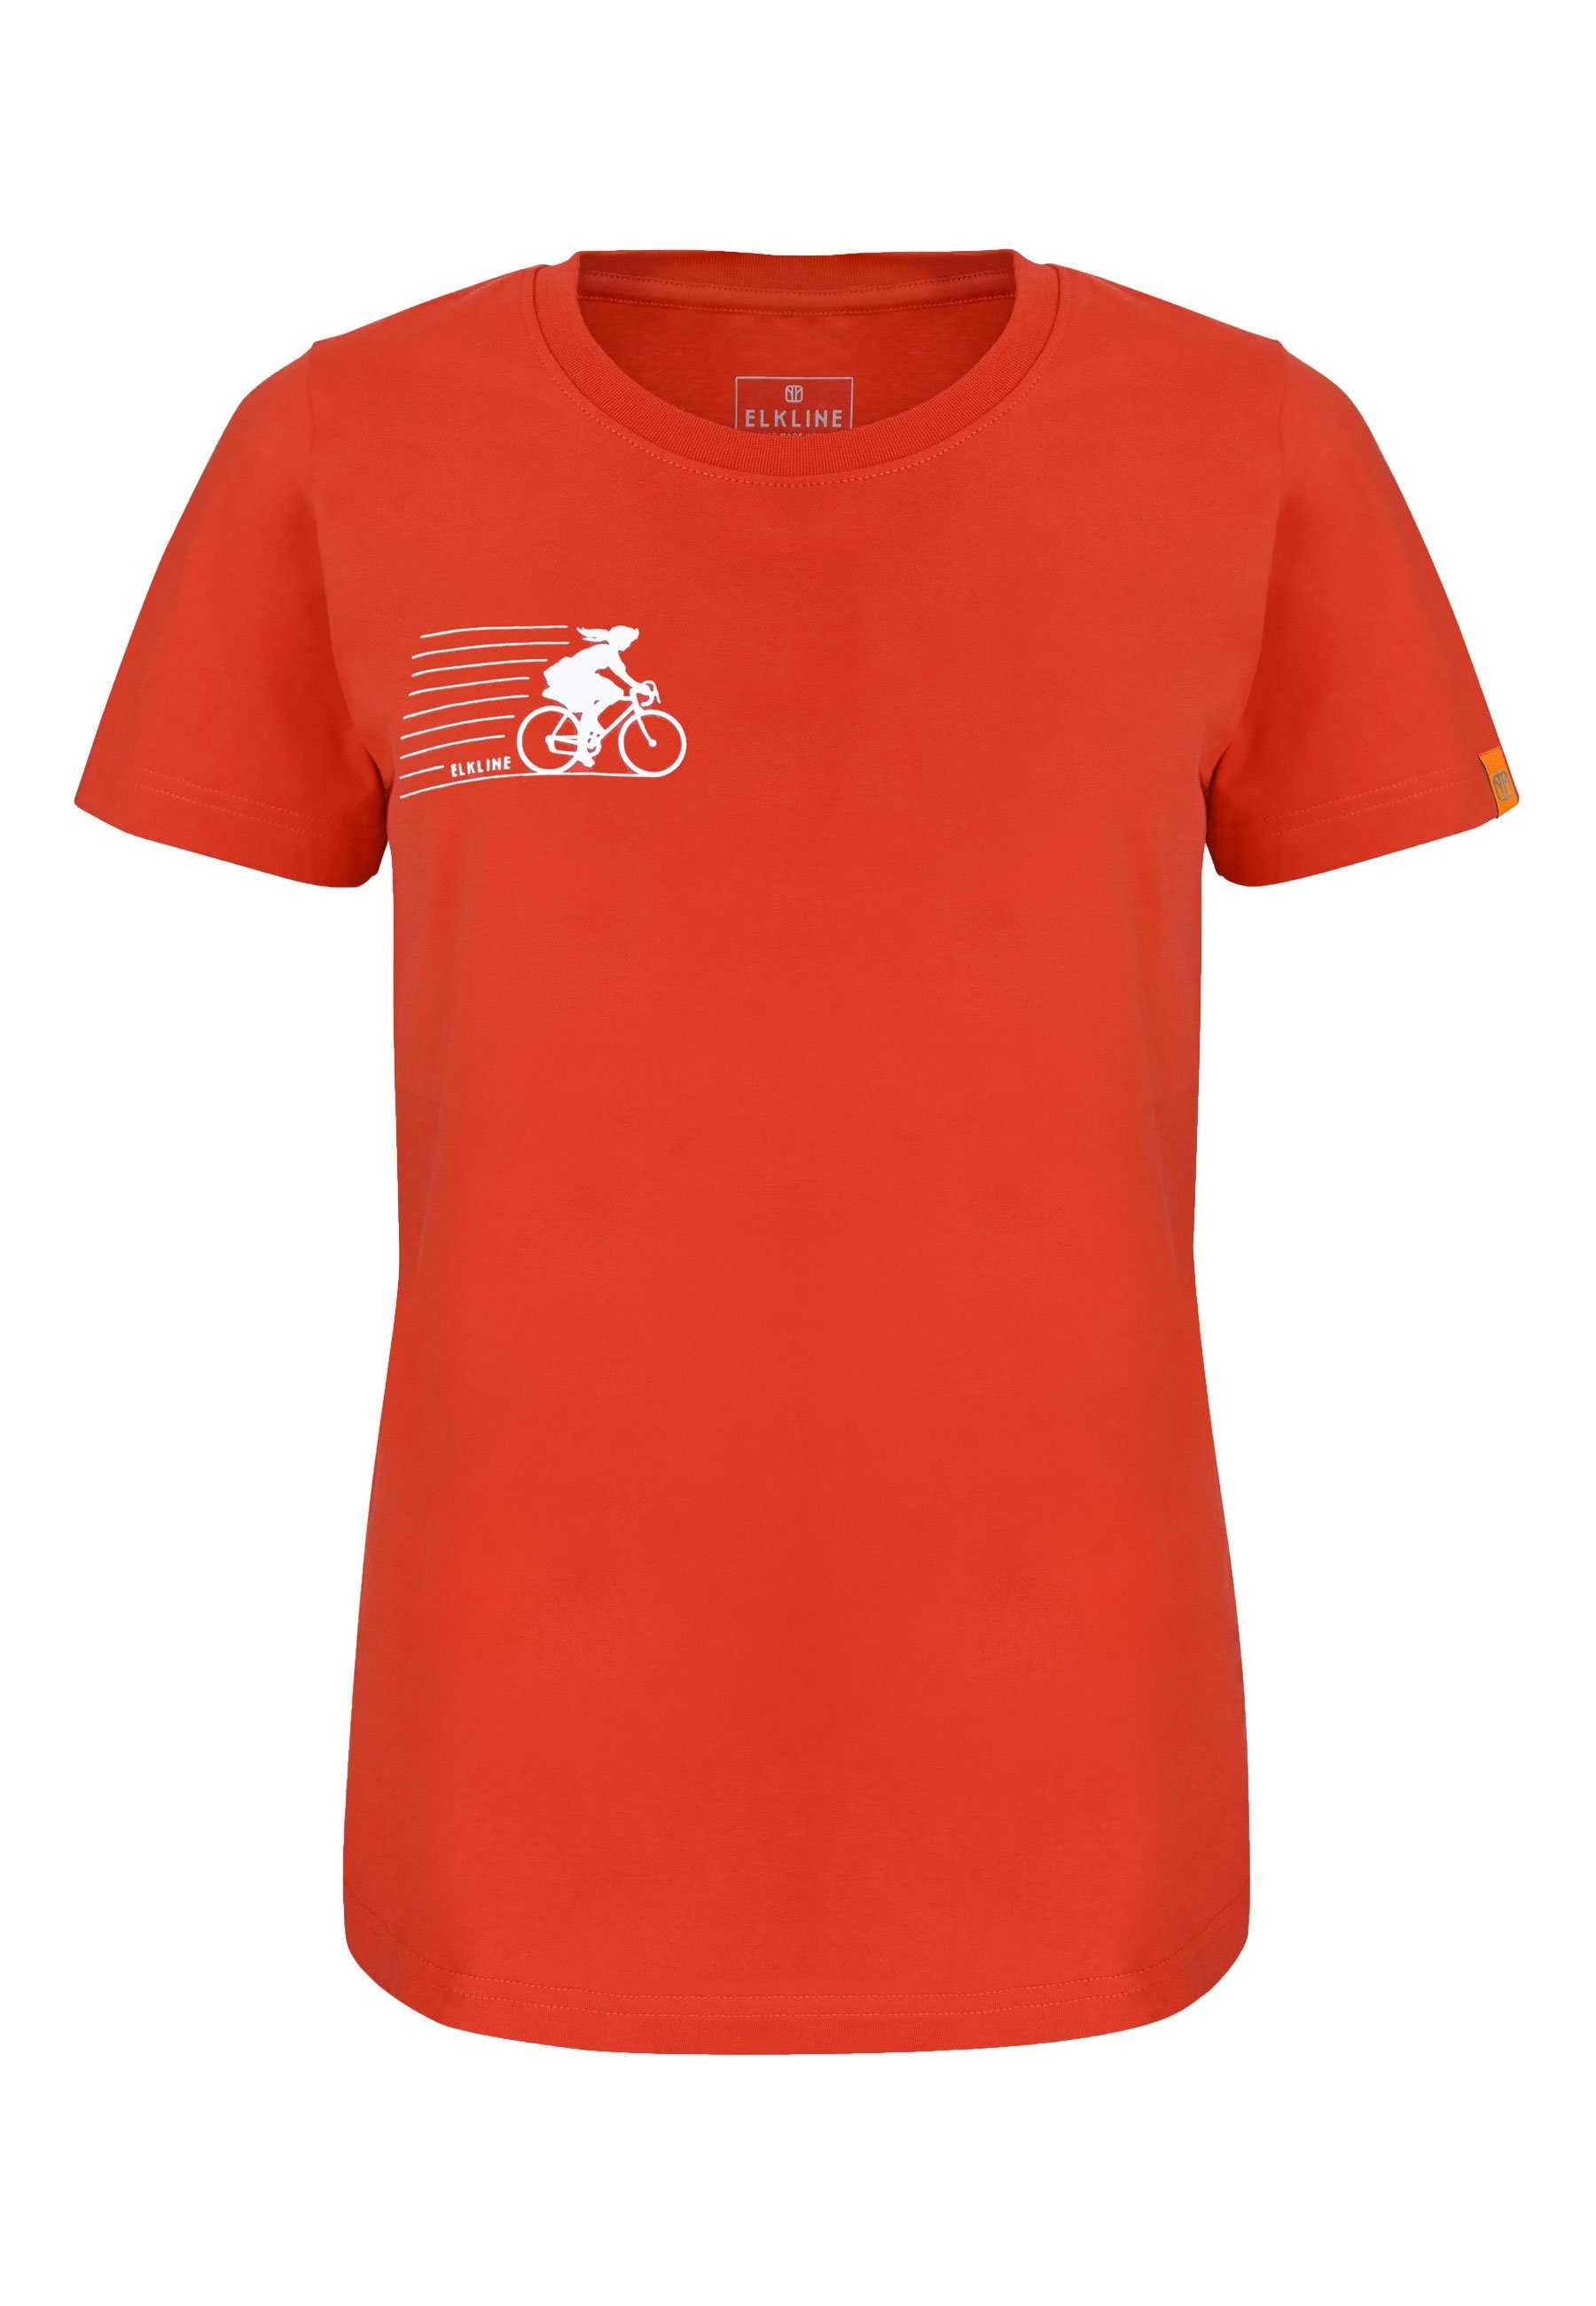 Elkline T-Shirt Sausewind Fahrrad Bike Aufdruck Jersey Shirt mandarin